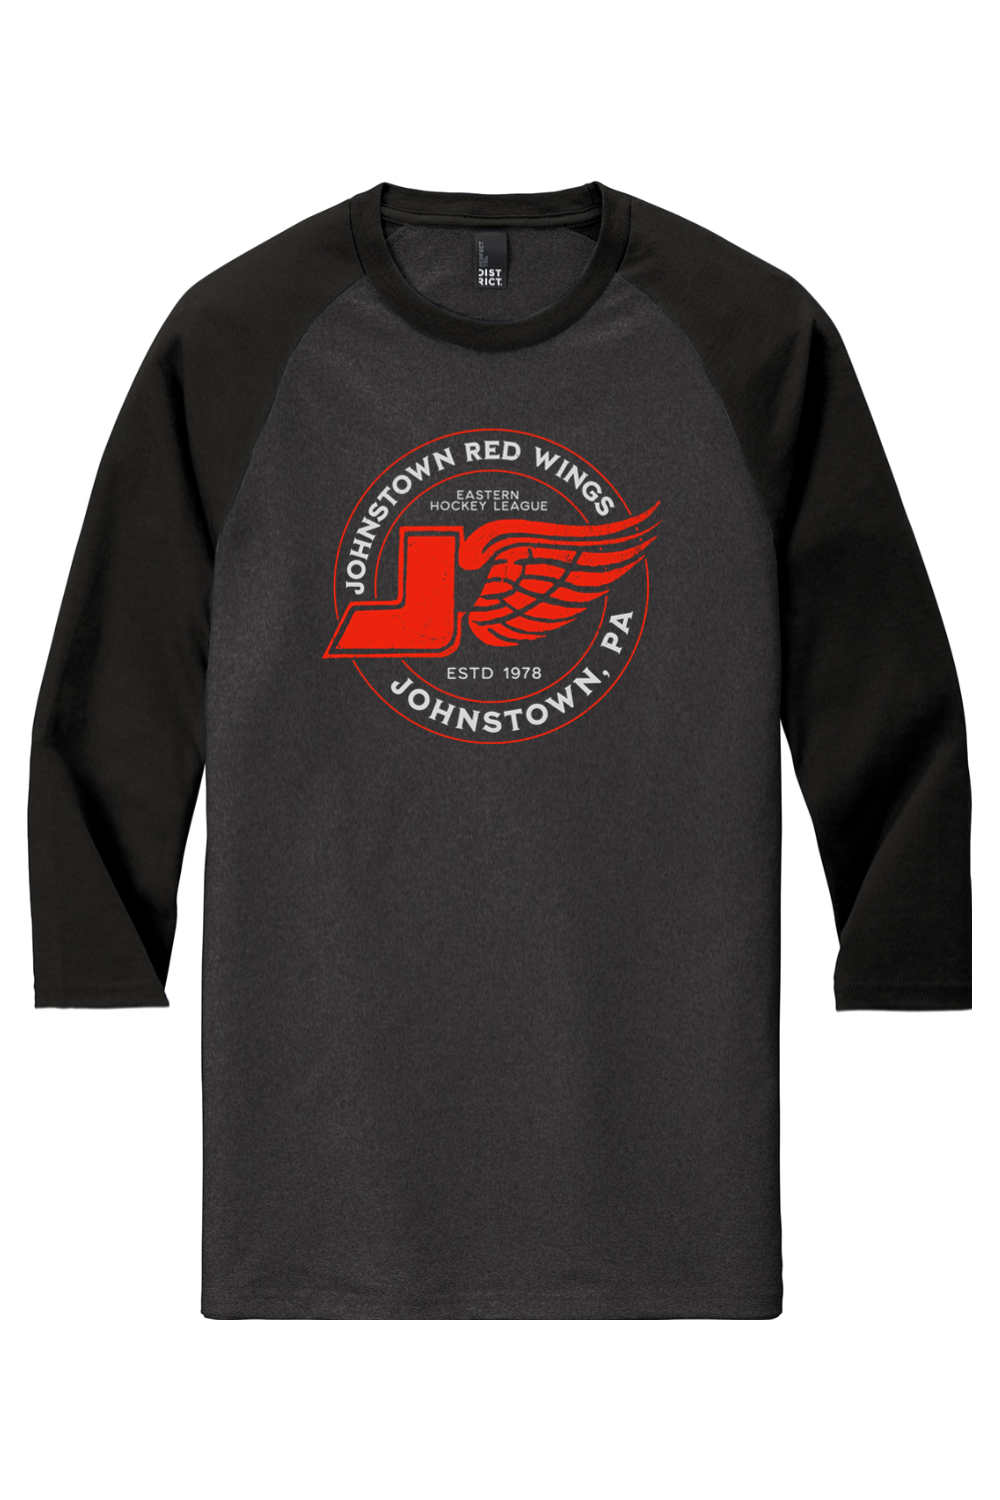 Johnstown Red Wings Hockey - Raglan Tee